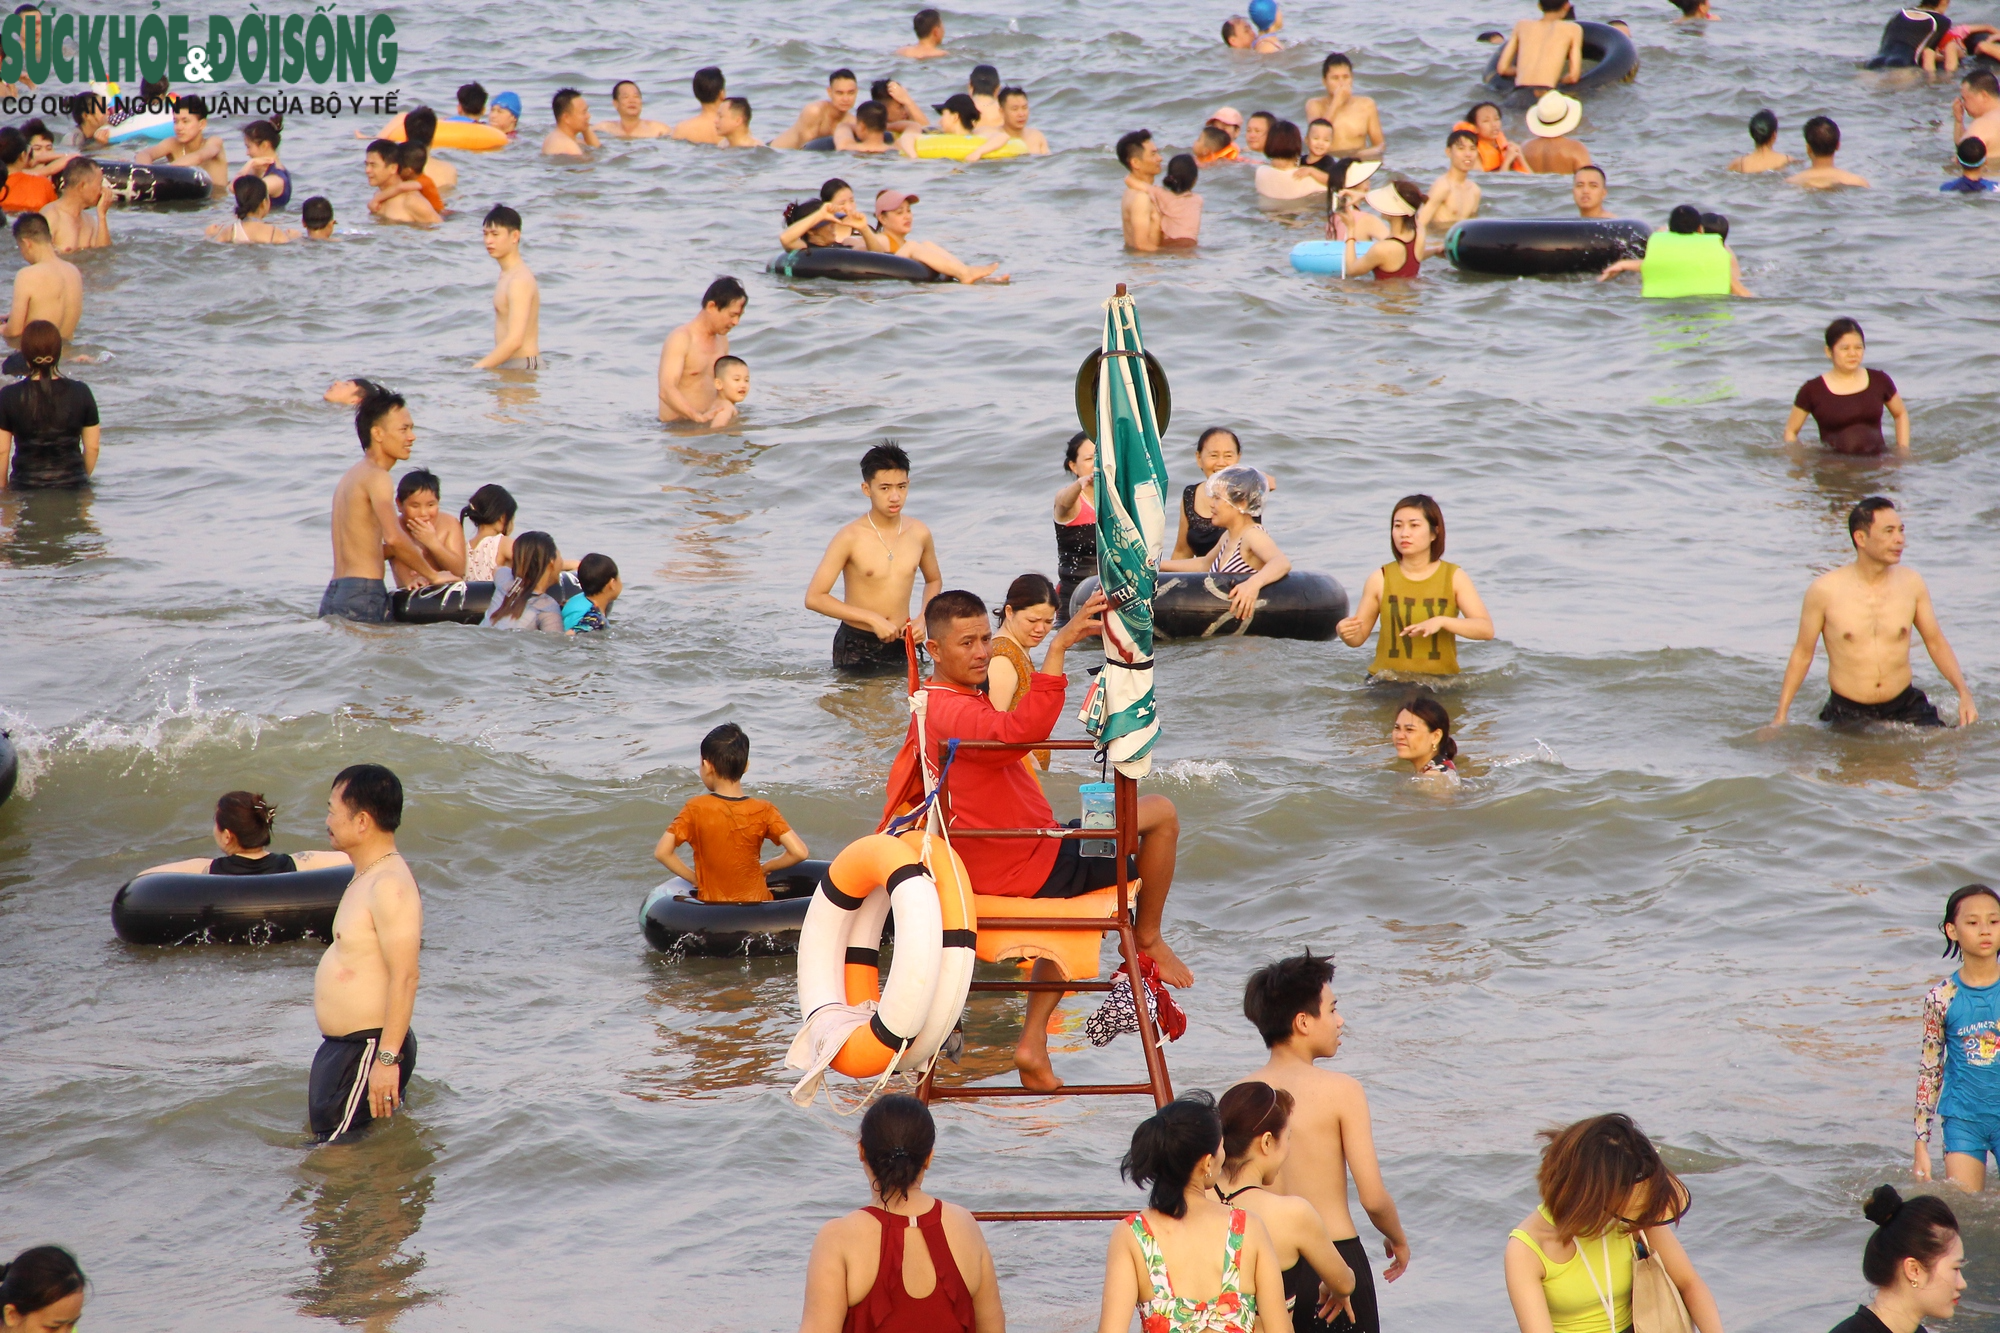 Bãi biển Sầm Sơn chật kín người dịp cuối tuần - Ảnh 13.